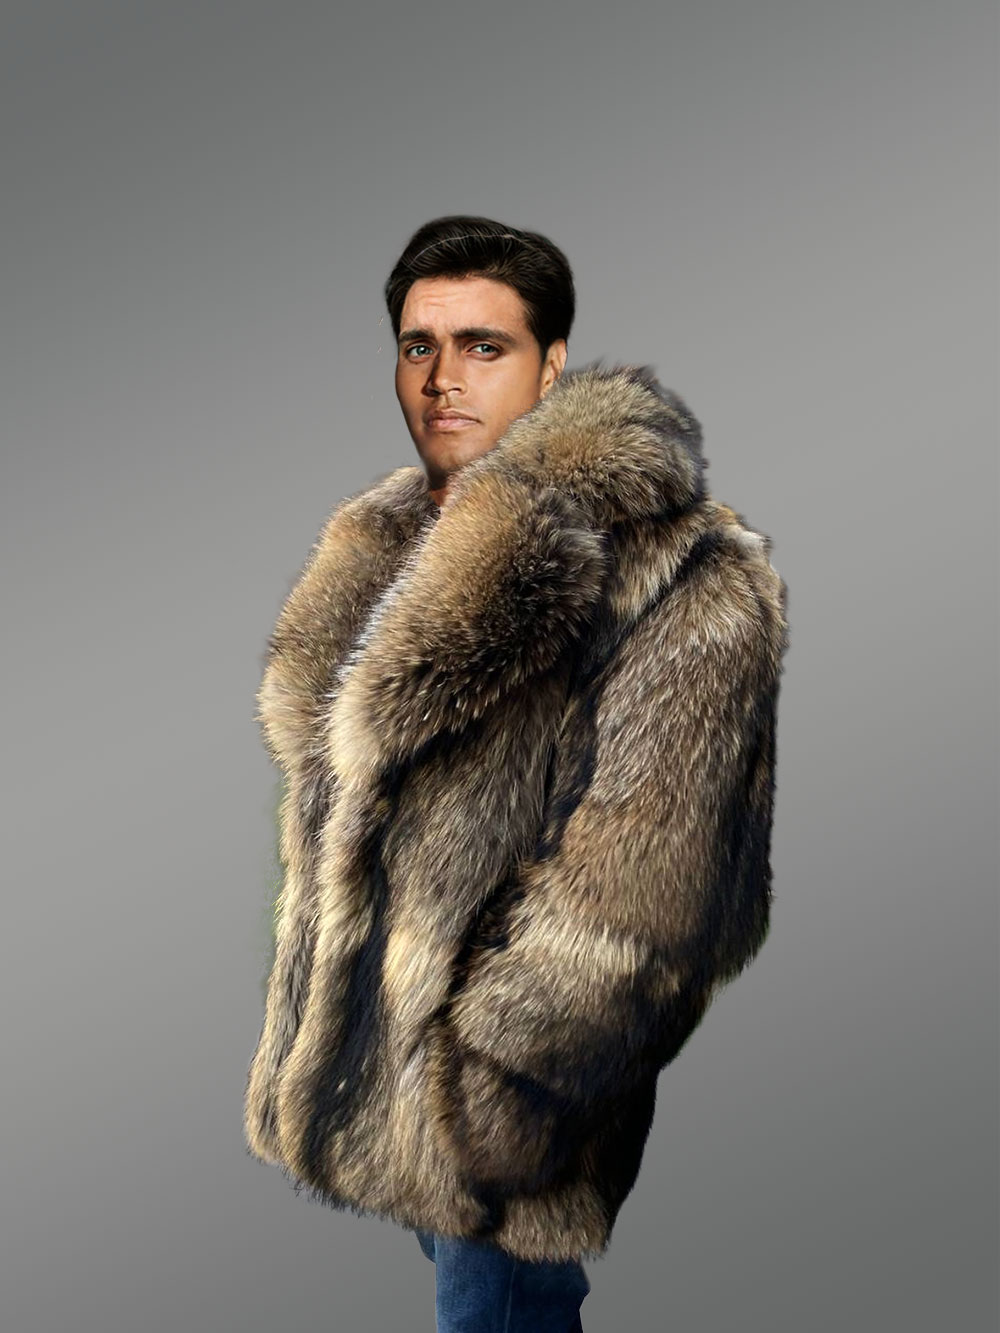 Mens Raccon Fur Jacket Fur Coat Men Winter Coats With 